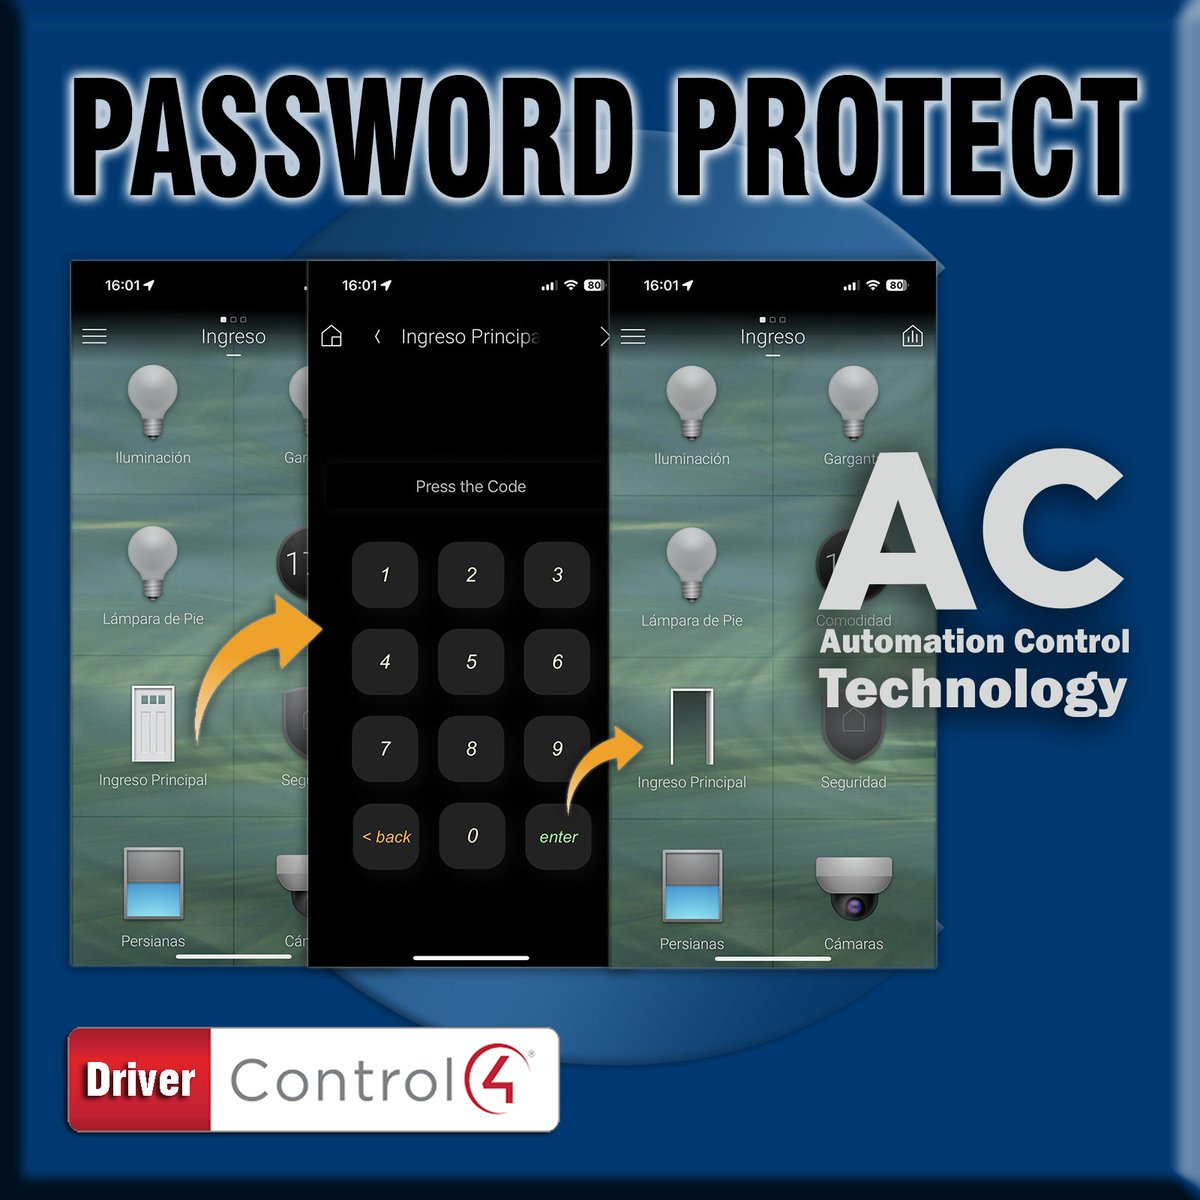 #Password Protect driver para @Control4